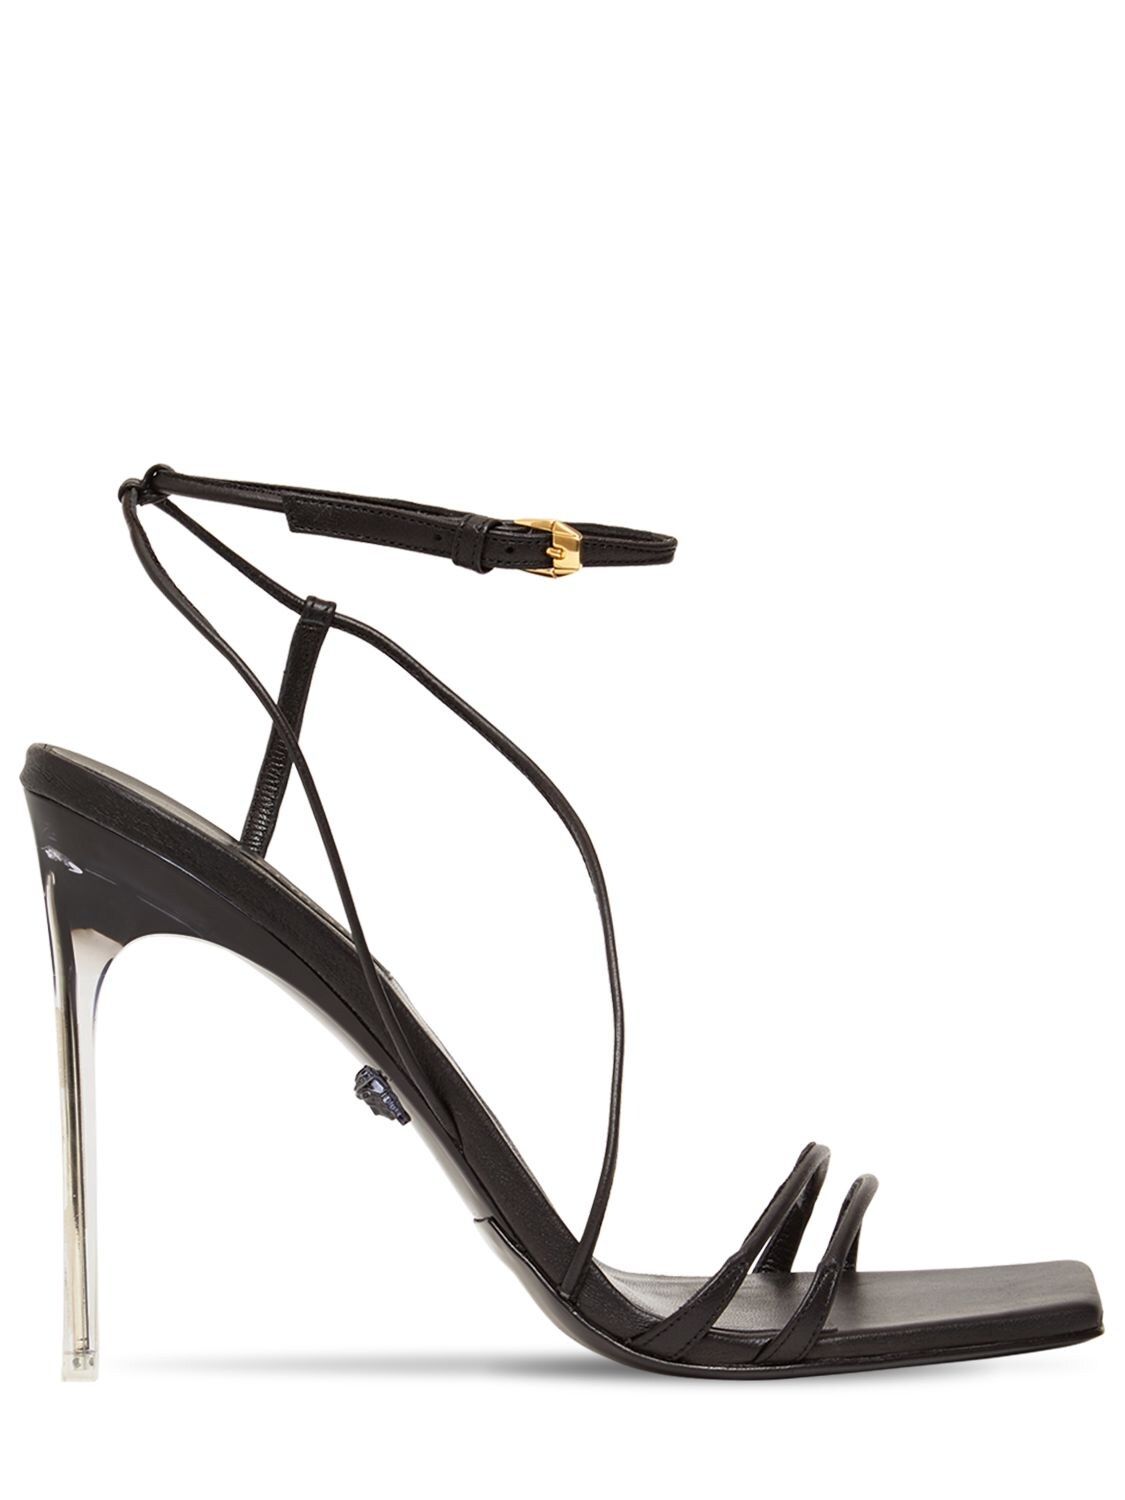 Versace - 110mm leather sandals - Black | Luisaviaroma | Luisaviaroma